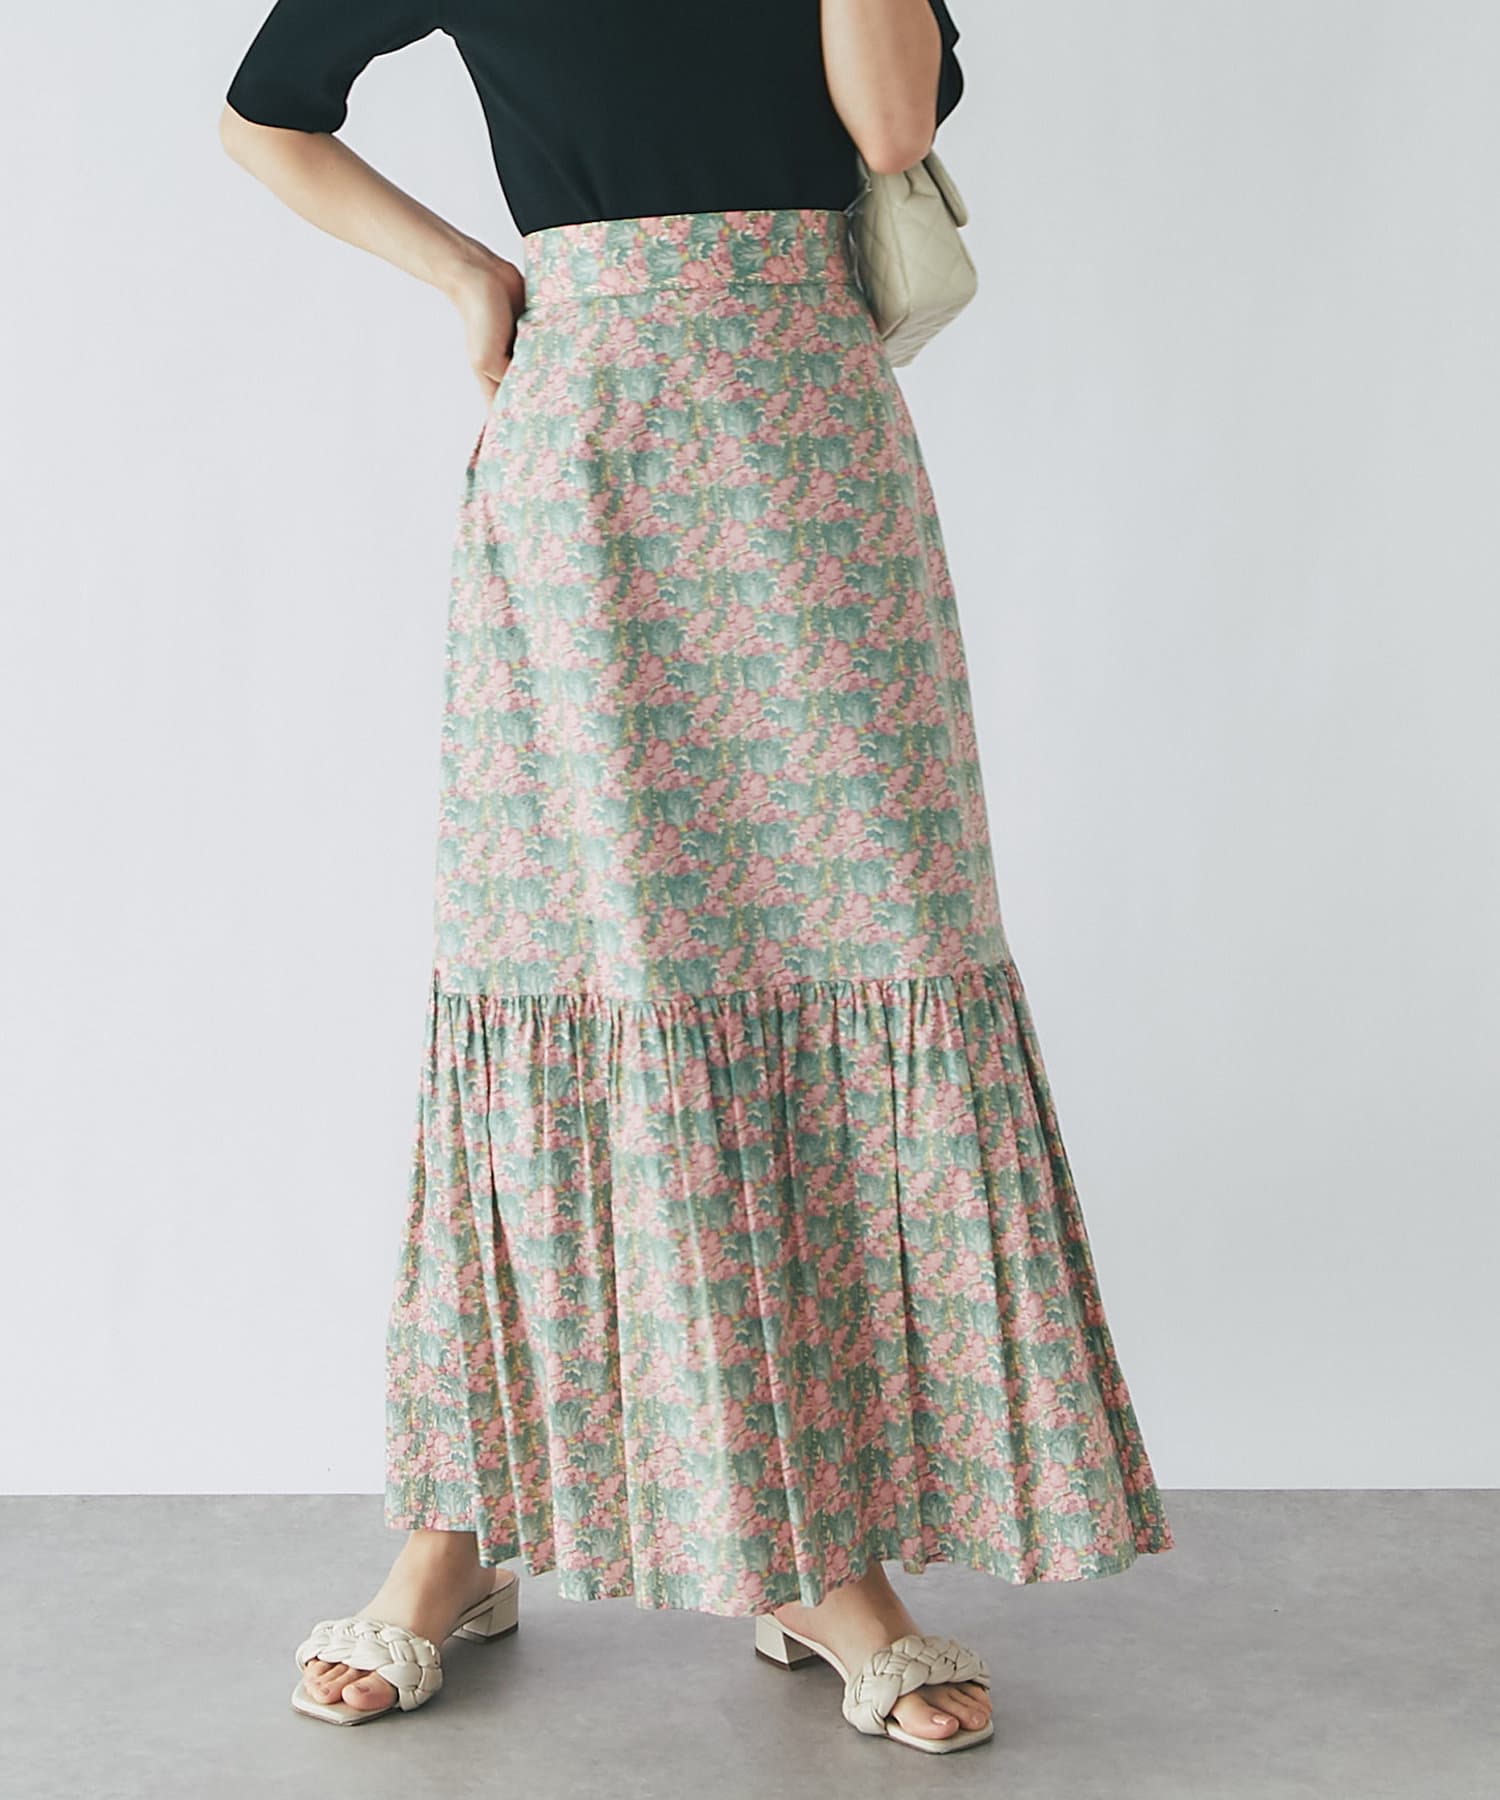 大量購入用 LUCA malla 花柄リボン付きマキシスカートです☆ - スカート